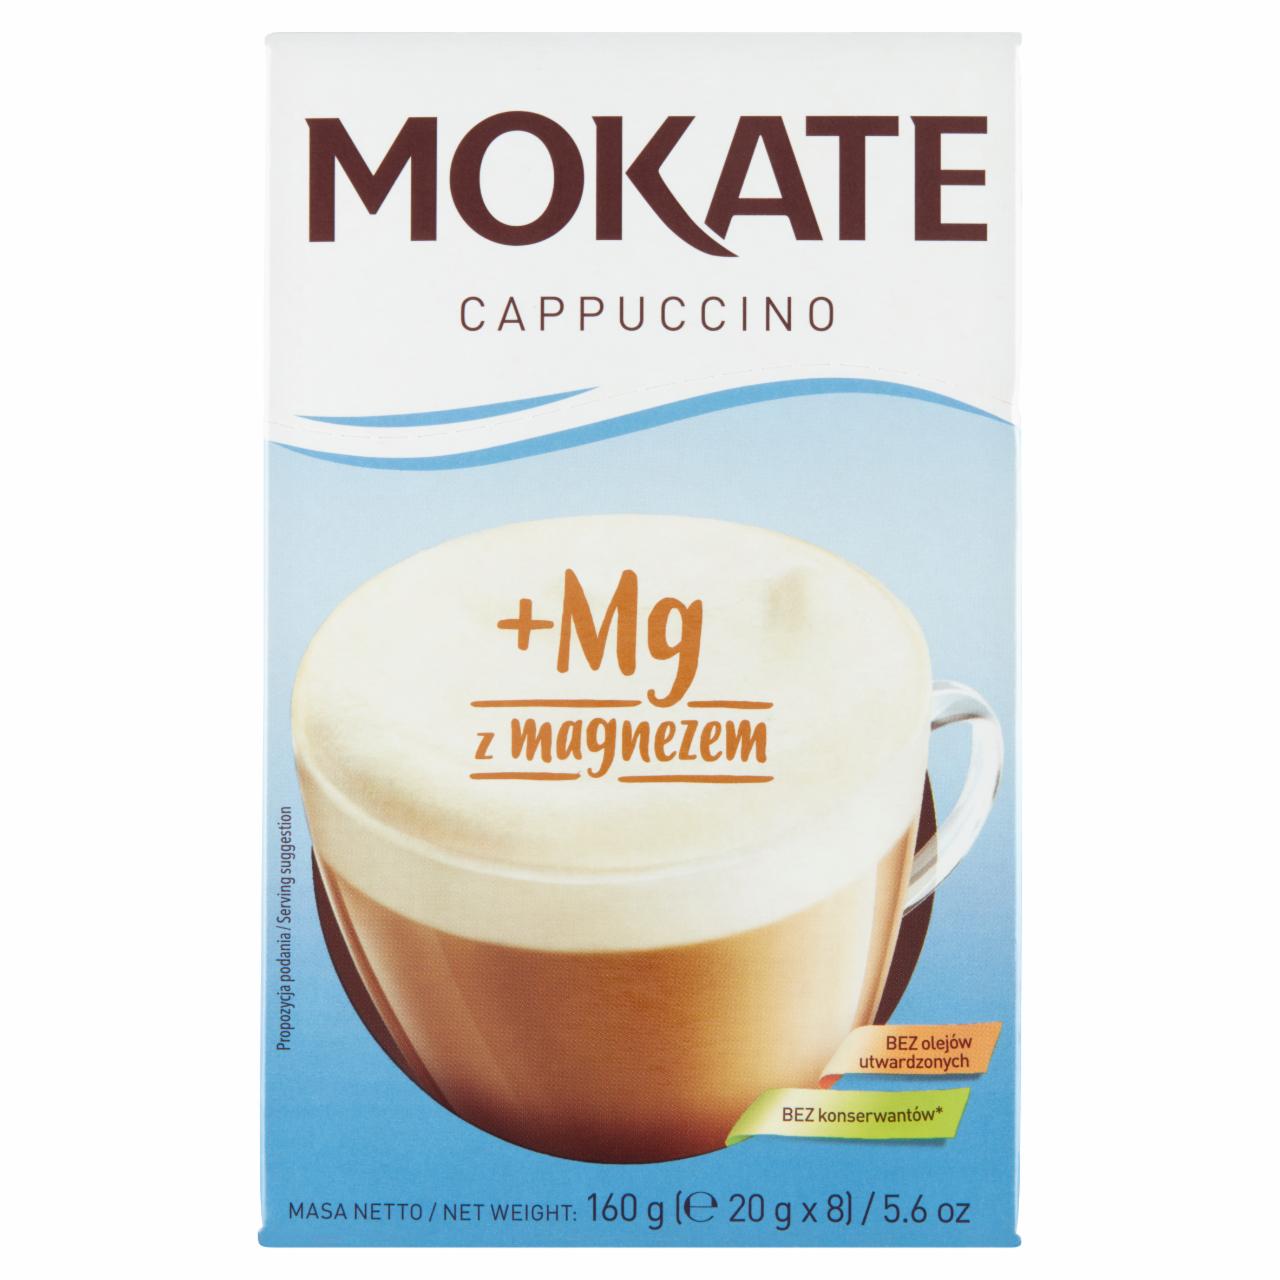 Zdjęcia - Mokate Cappuccino z magnezem 160 g (8 x 20 g)